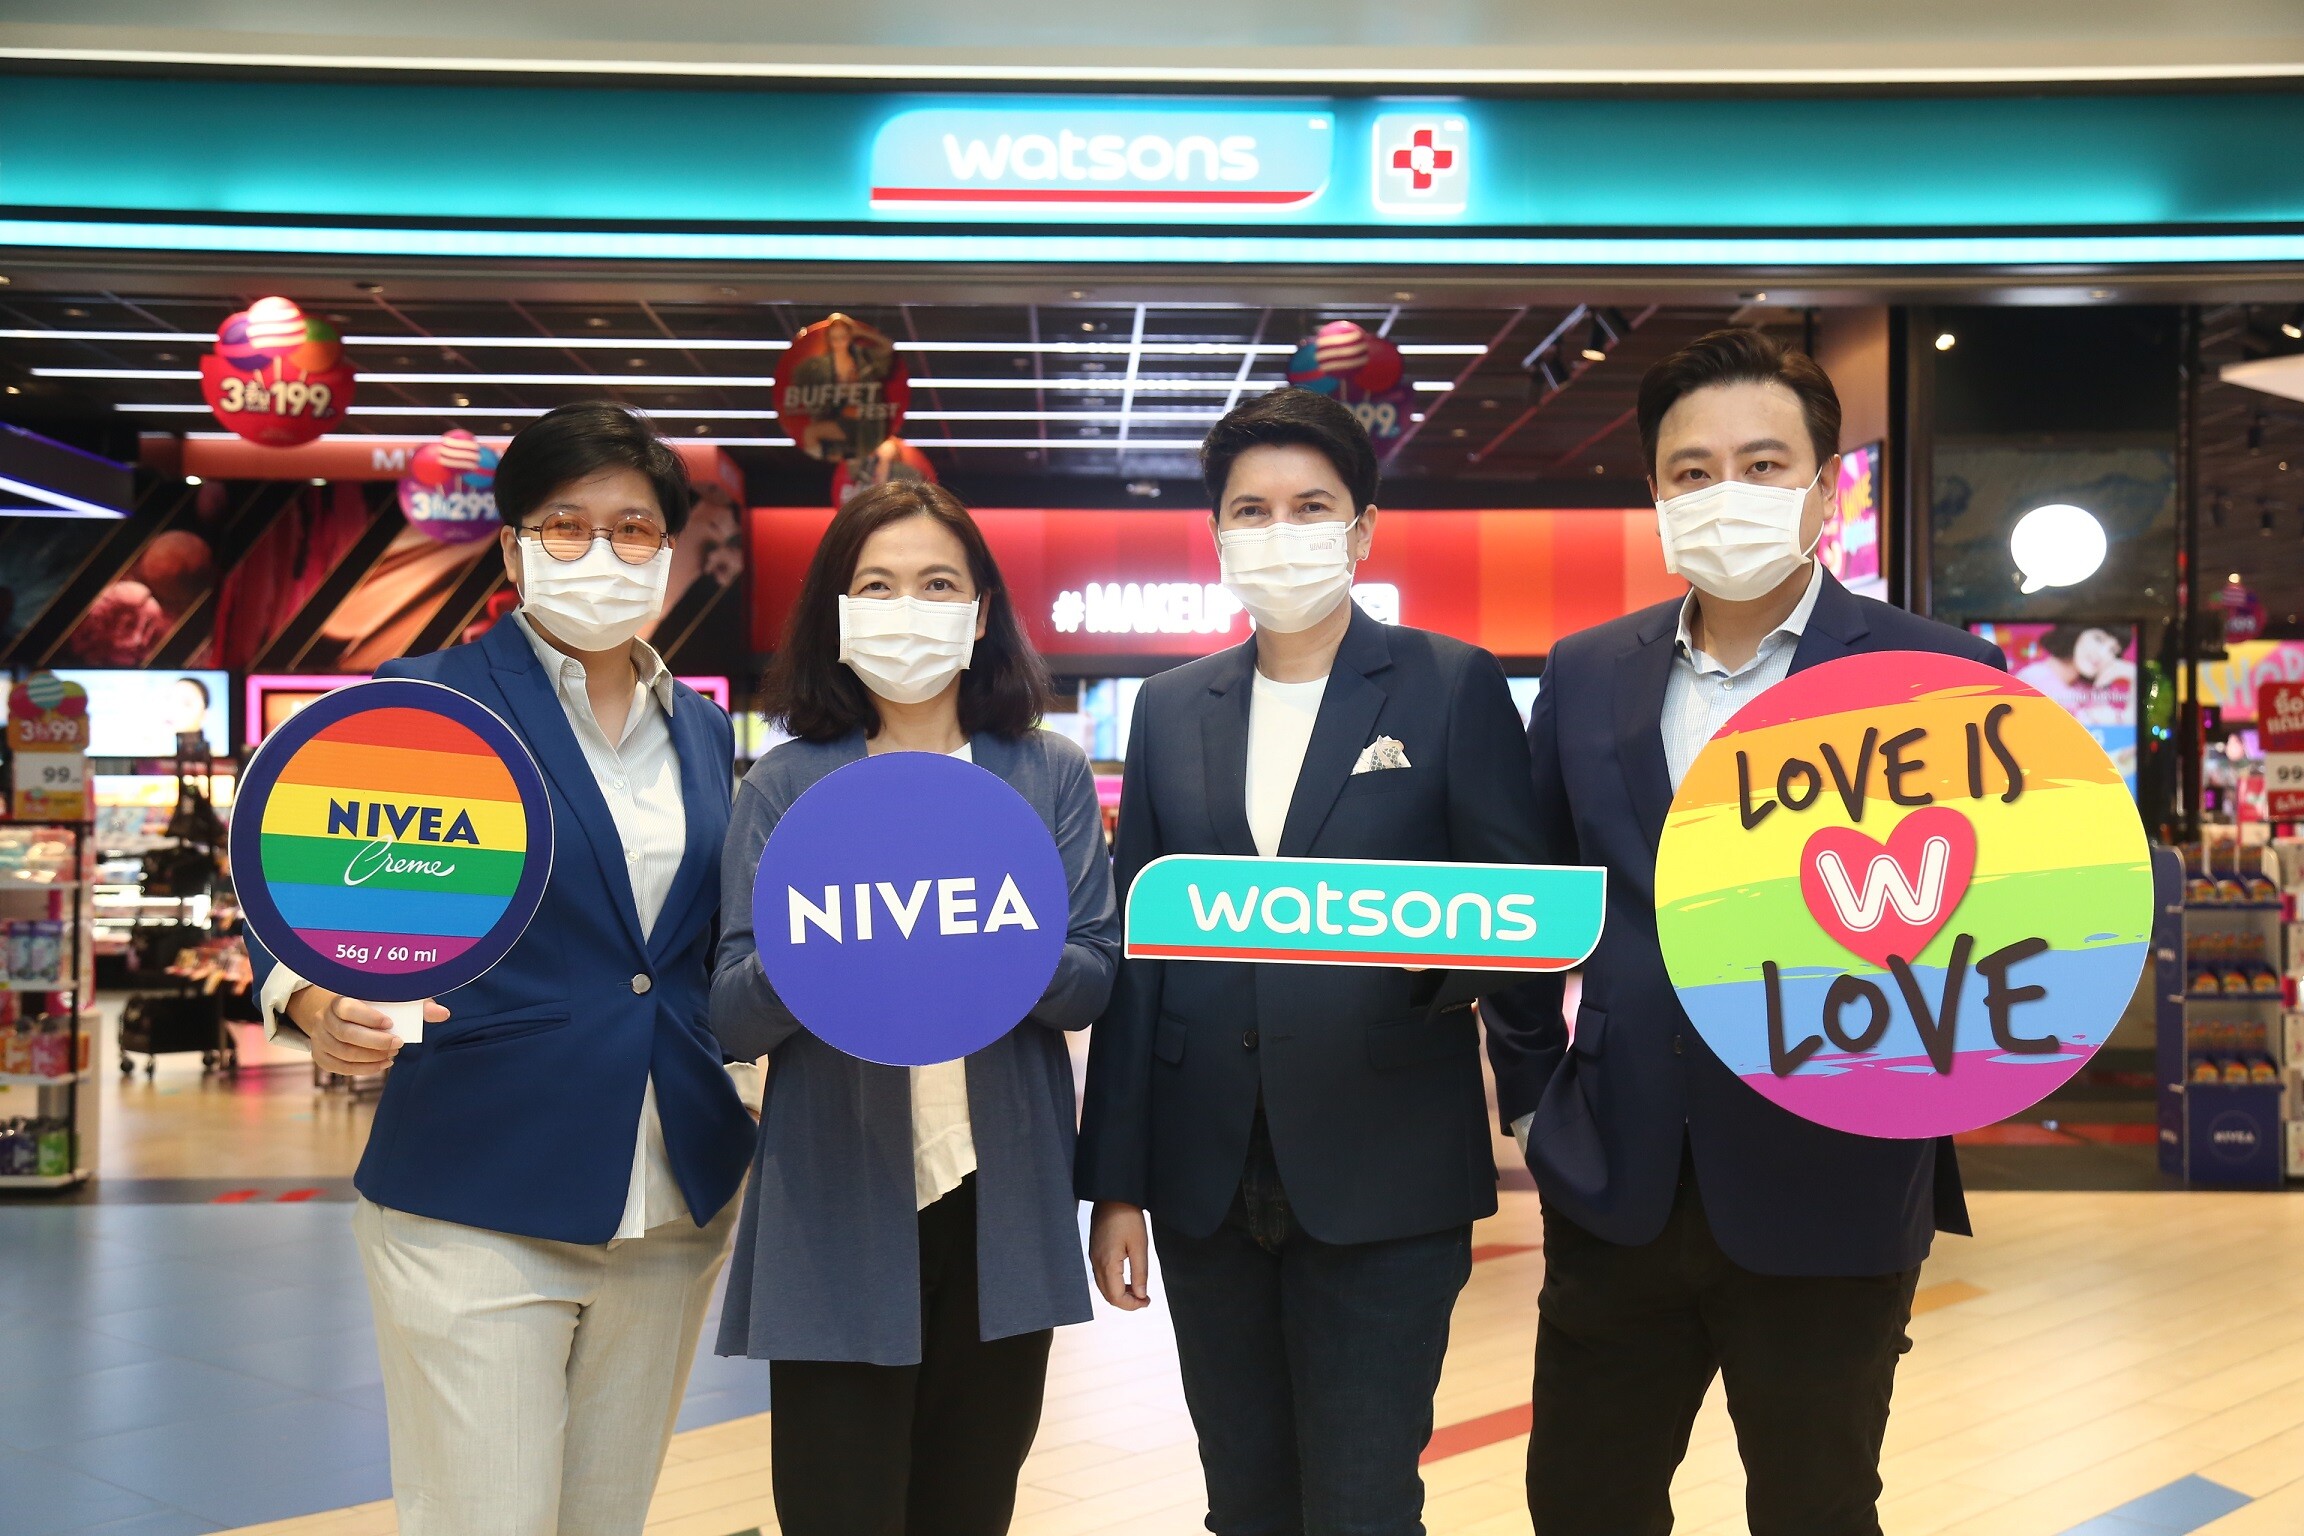 นีเวีย ร่วมกับ วัตสัน จัดแคมเปญ "นีเวีย ไพรด์" (NIVEA Pride) มอบโอกาสให้เด็กทุกคนมีสุขภาพที่ดีอย่างเท่าเทียมกัน